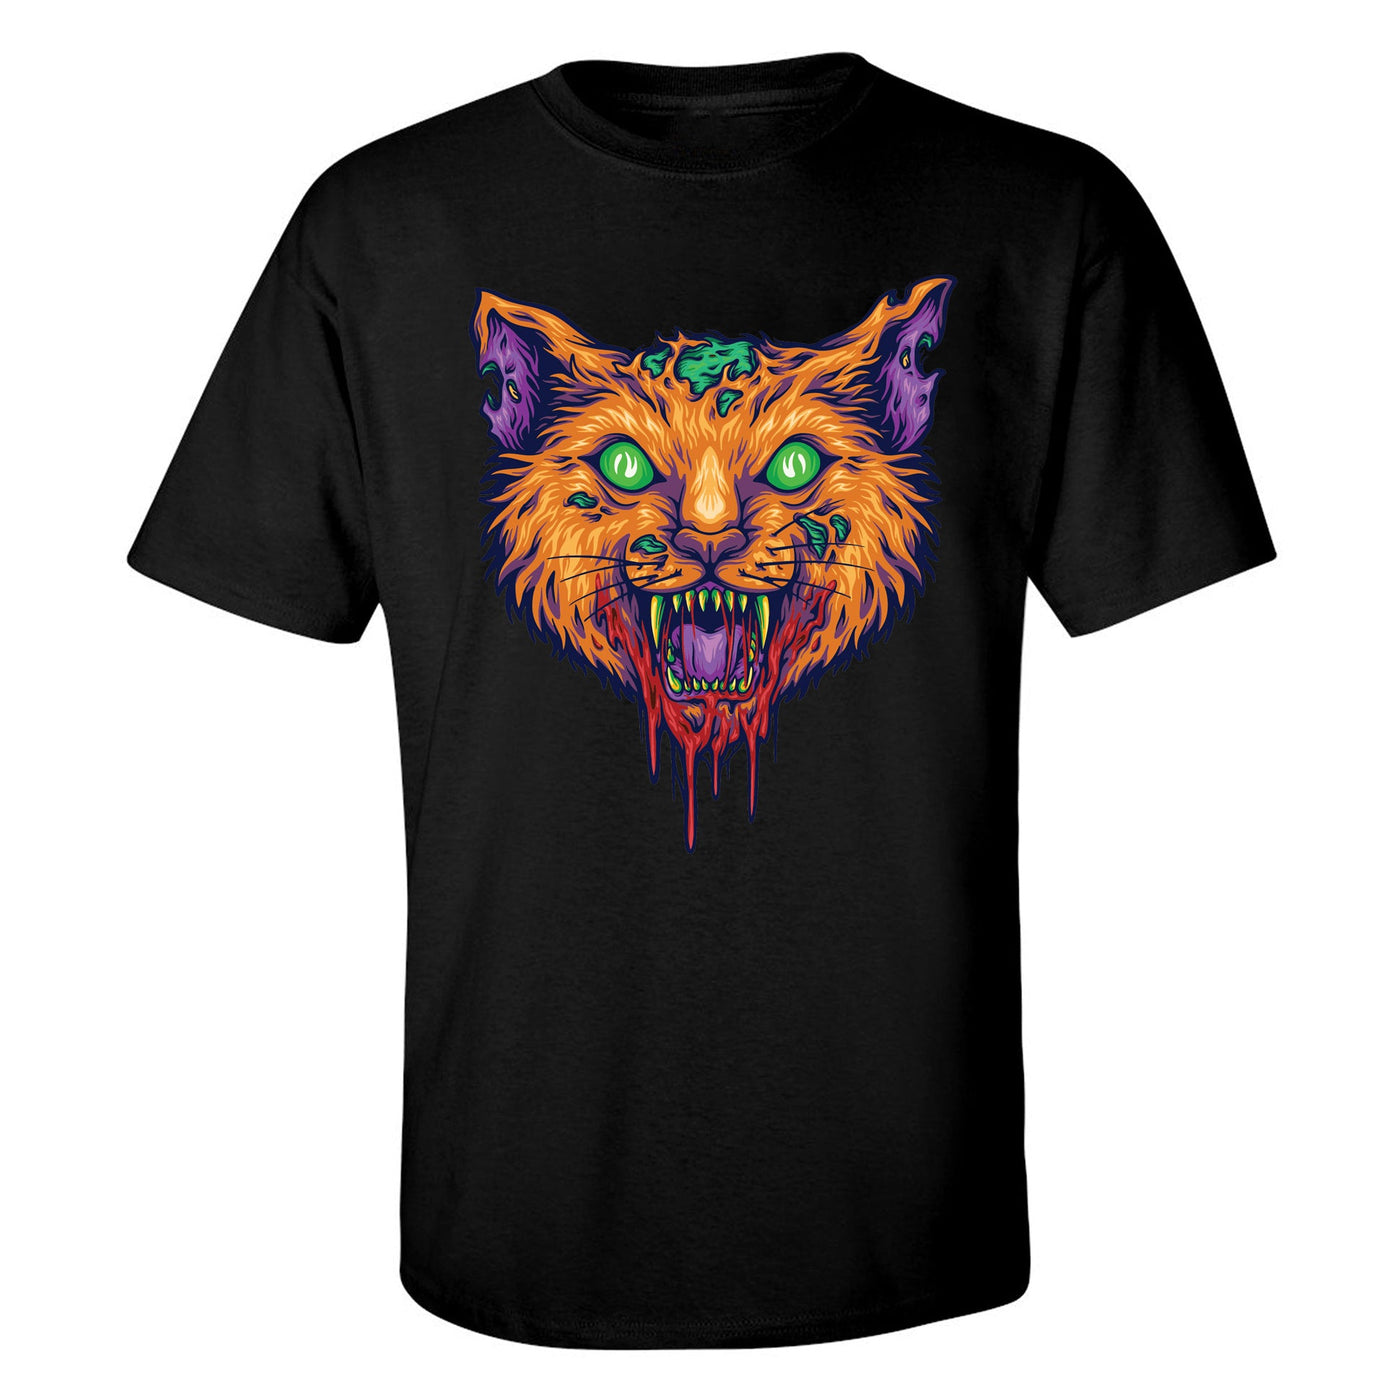 "Vicious Cat" Short Sleeve T-Shirt